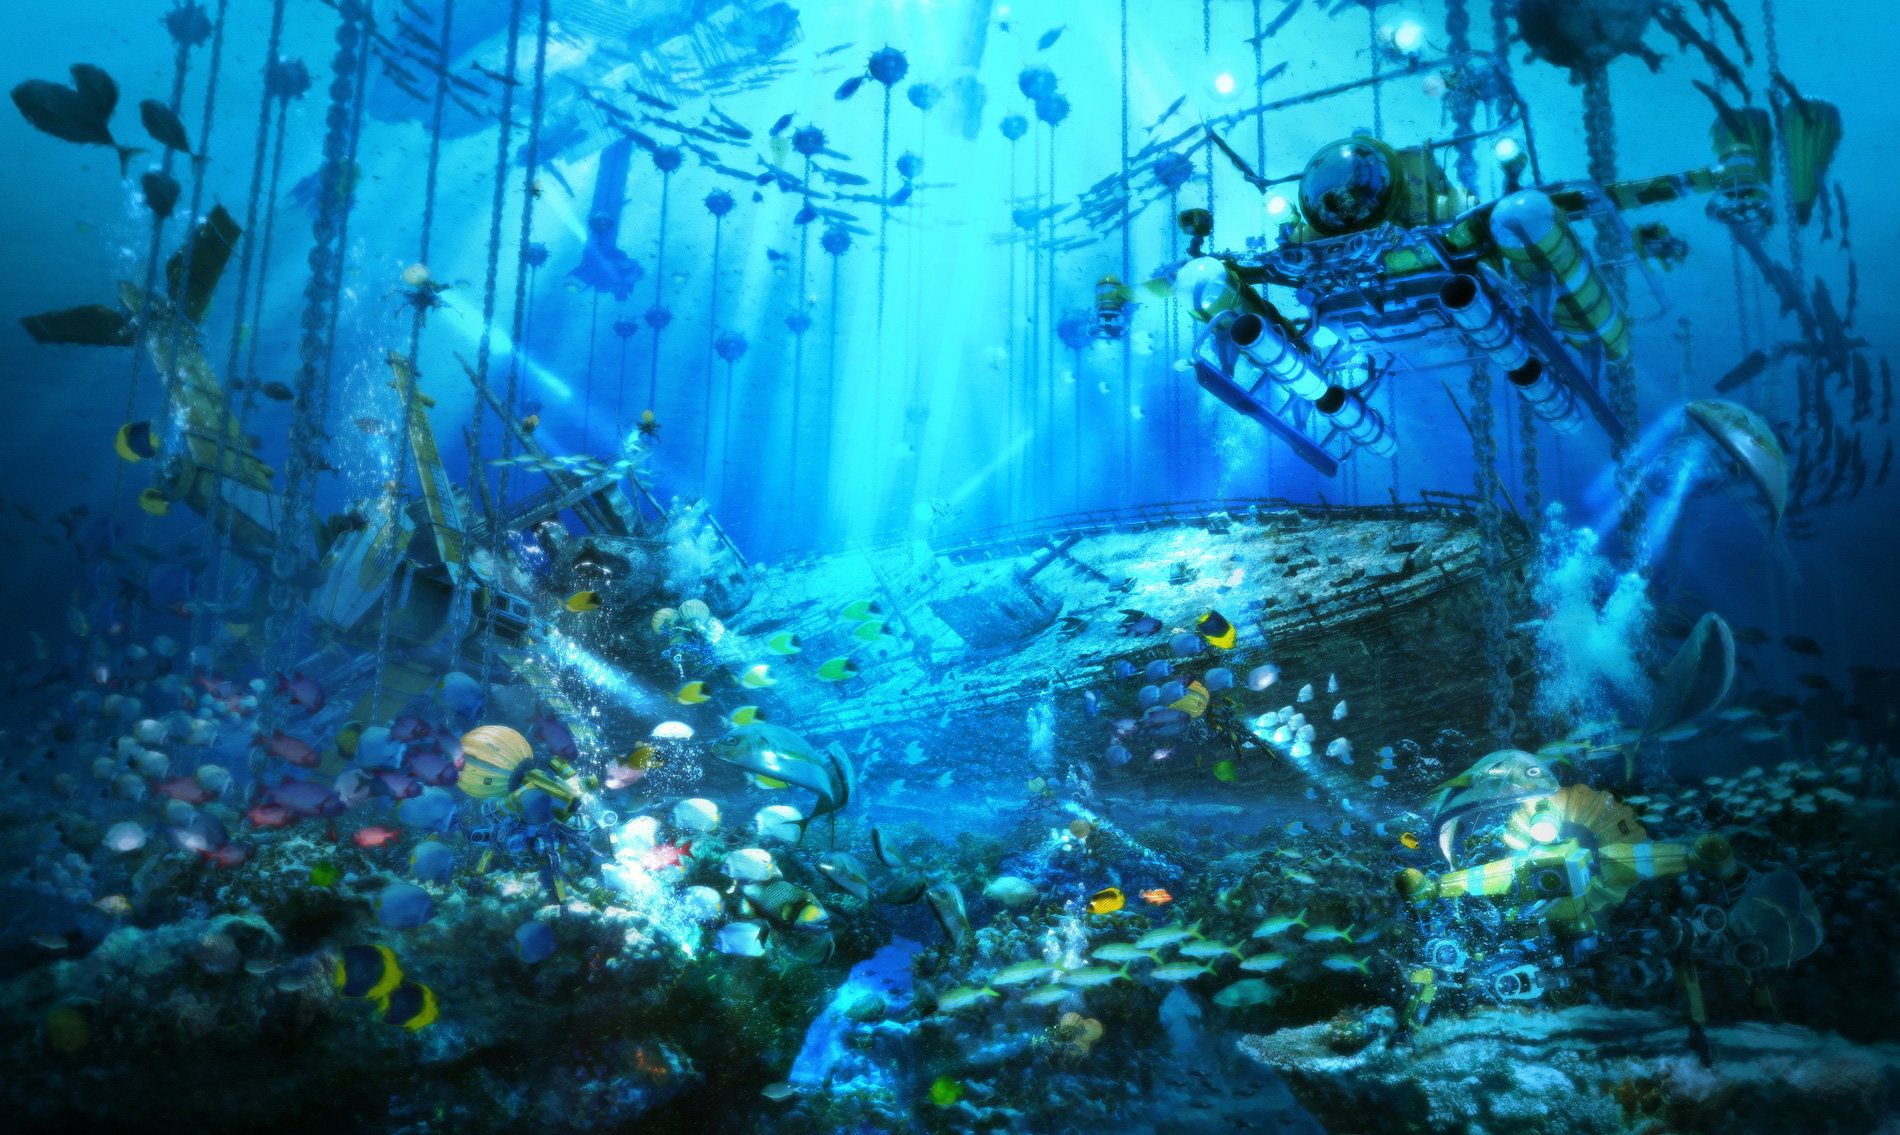 Ocean Landscape Anime Style 4k Wallpaper 4K-demhanvico.com.vn